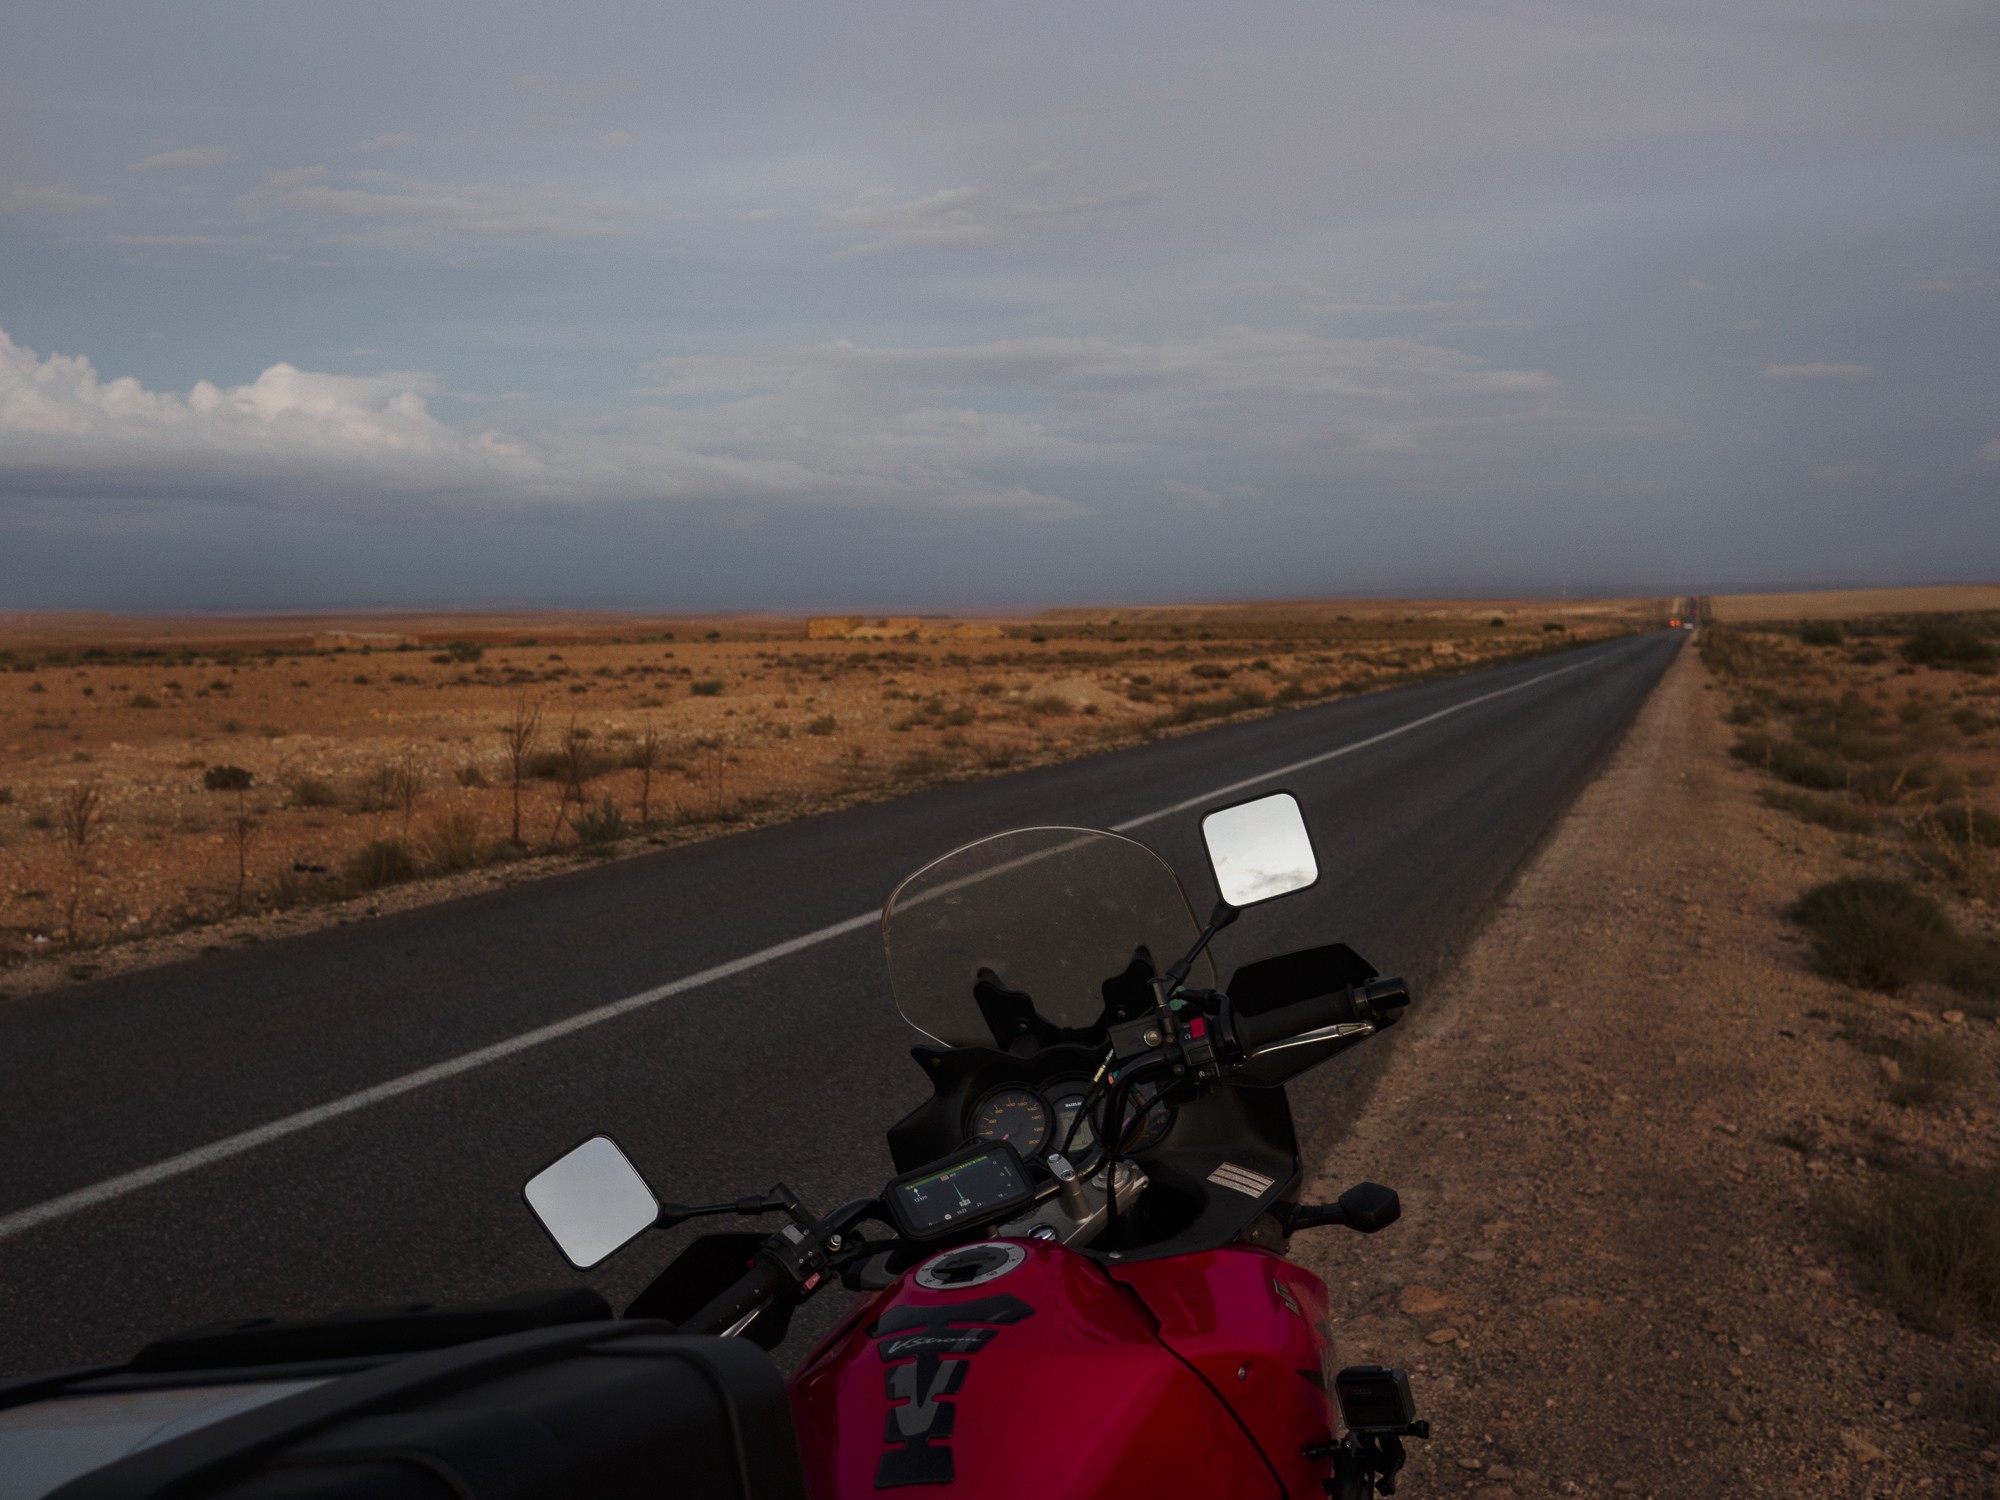 La moto aparcada junto a una de las carreteras que cruzan la hamada Marroquí